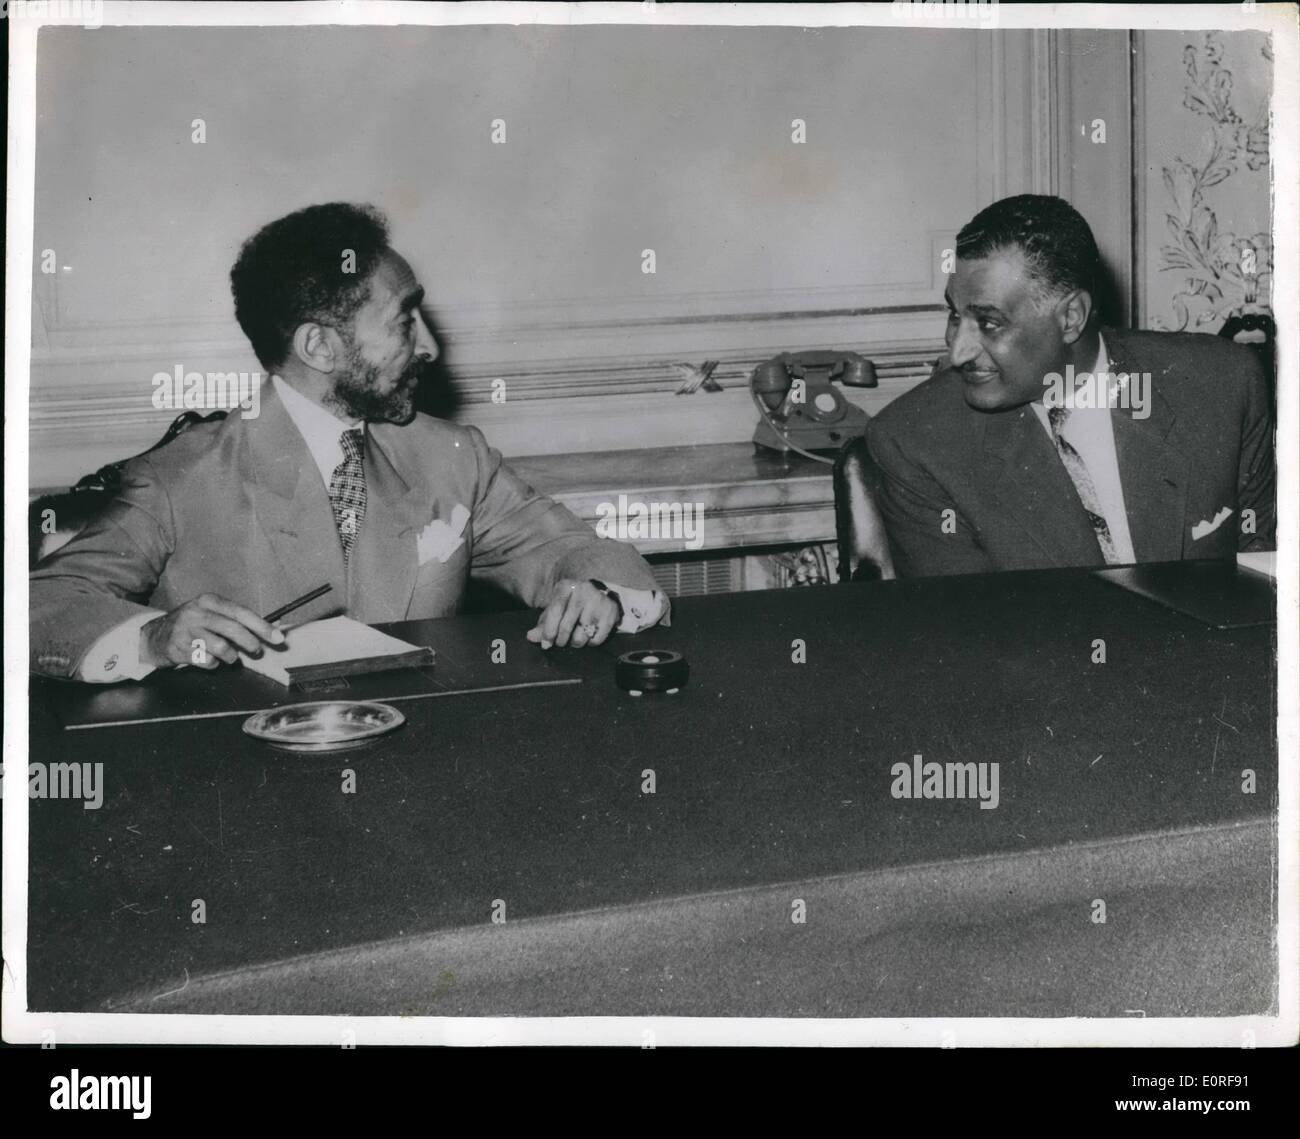 Juin 06, 1959 - L'Empereur Hailé Sélassié a eus avec le président Nasser au Caire. : Les premiers pourparlers officiels entre l'Empereur Hailé Sélassié d'Ethiopie et président Gamal Nasser ont eu lieu récemment au Caire. Les deux dirigeants se sont vu ici au cours de leurs entretiens à l'Kubbah Palace. Banque D'Images